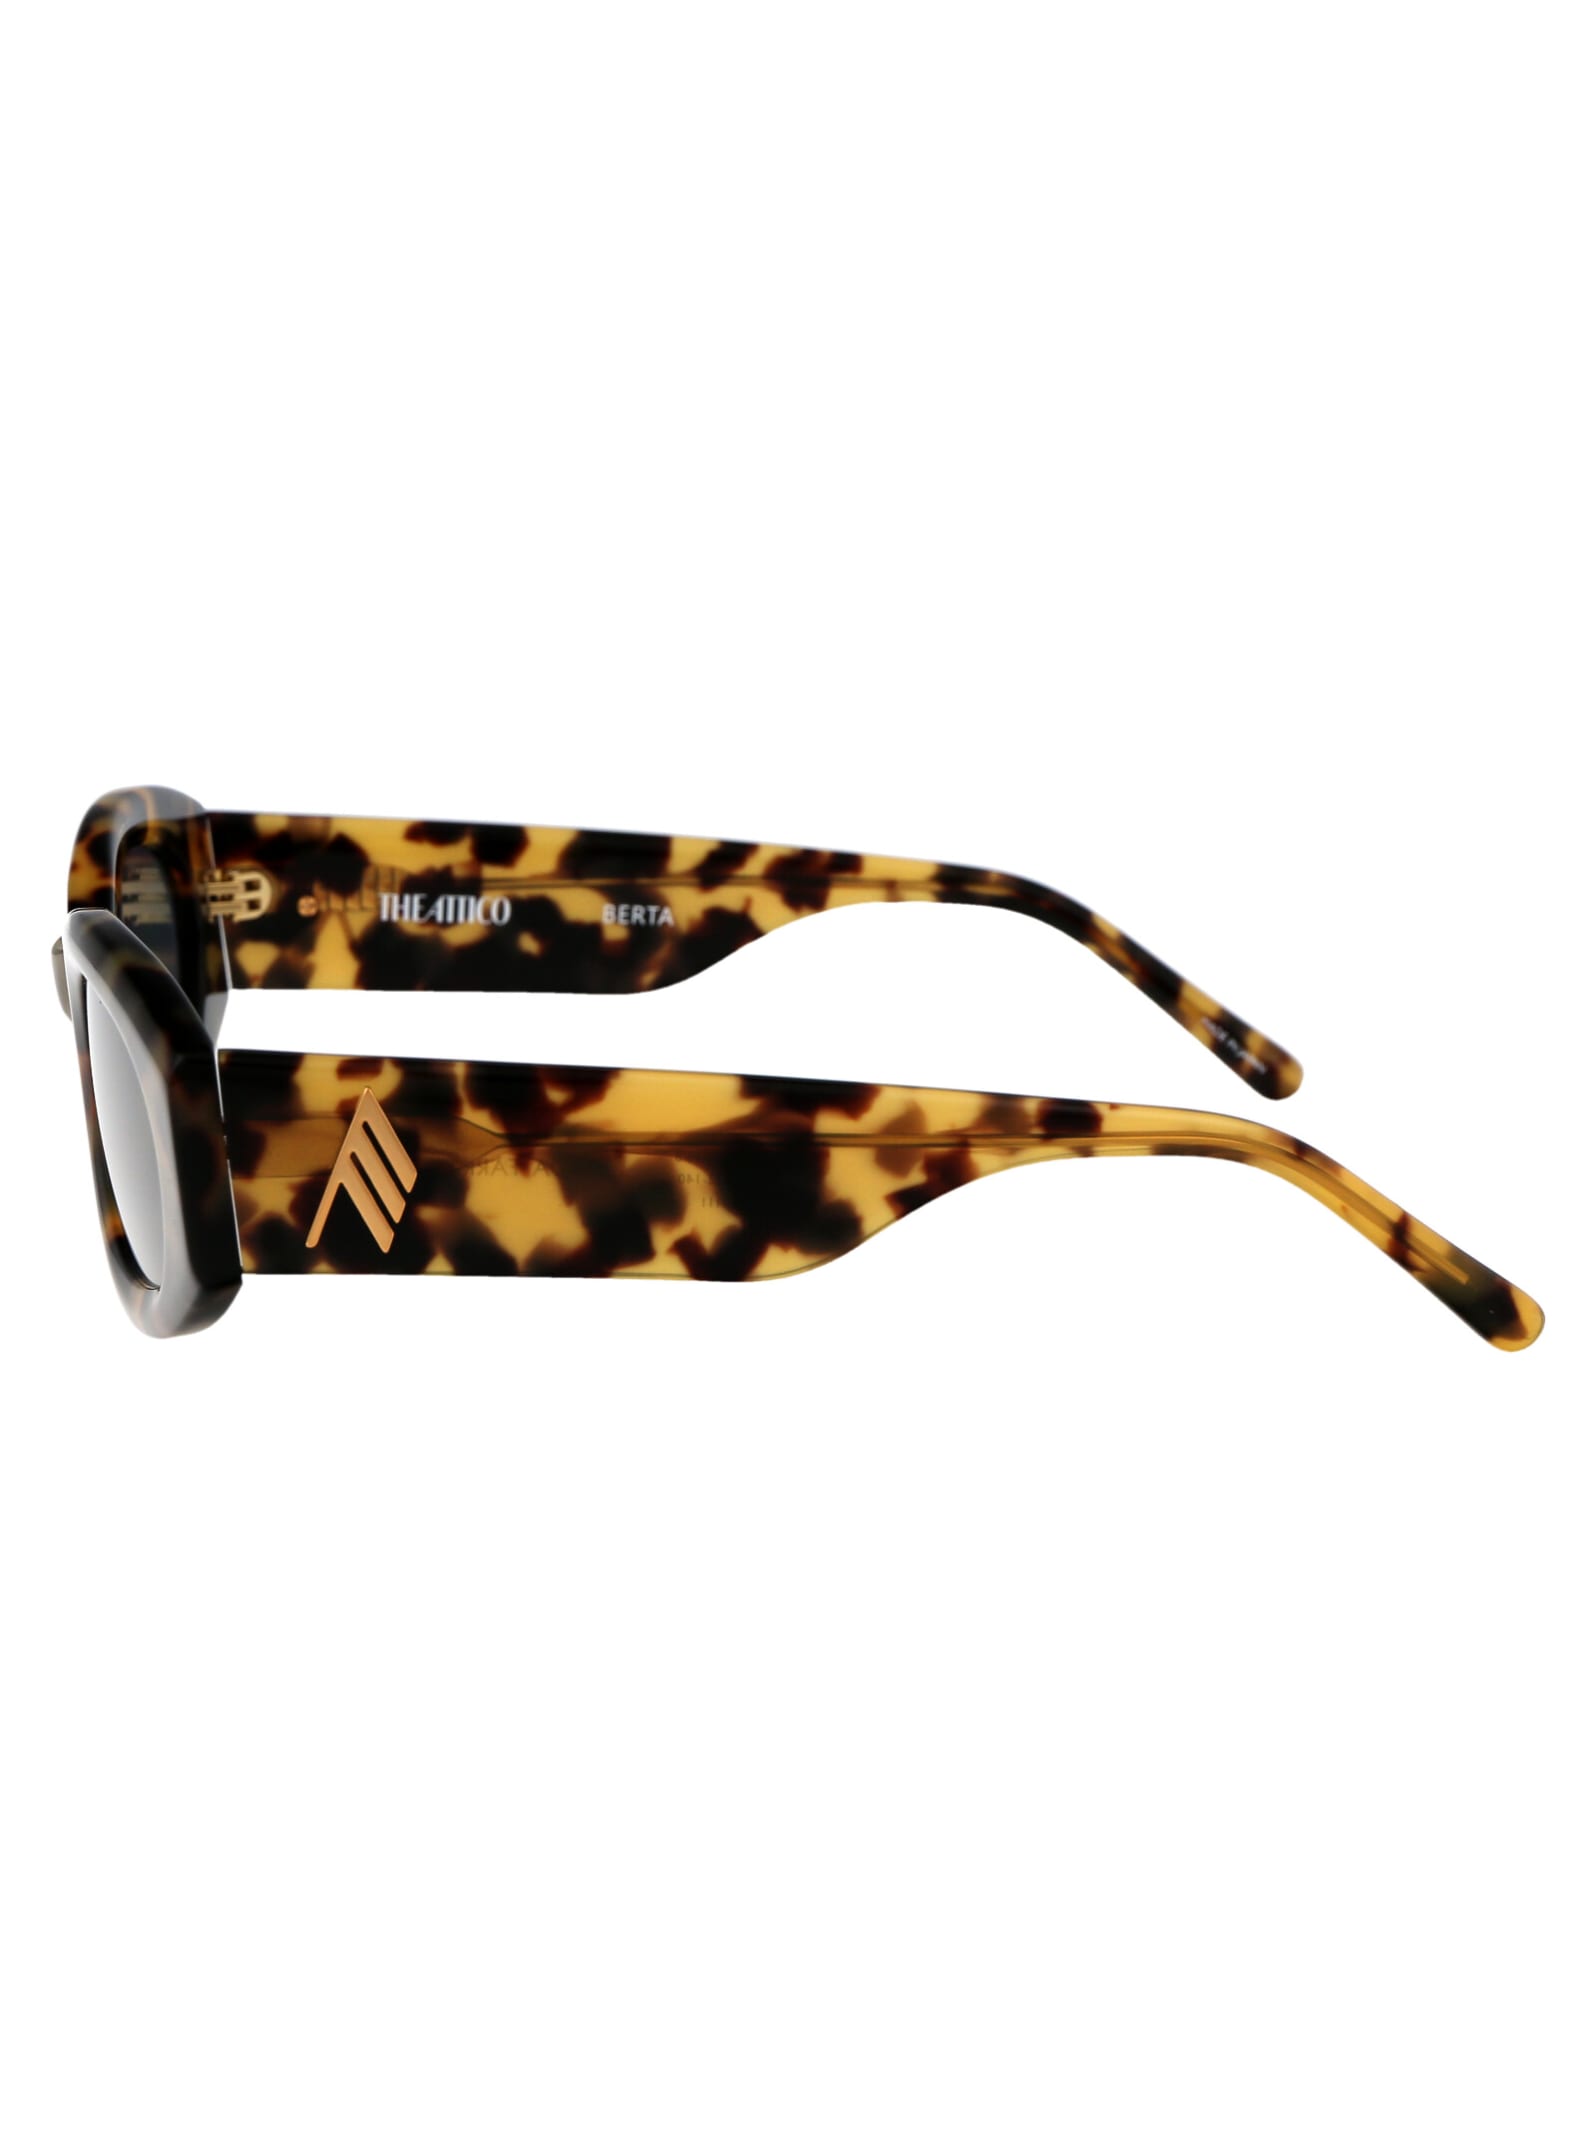 Shop Attico Berta Sunglasses In T-shell/gold/blue